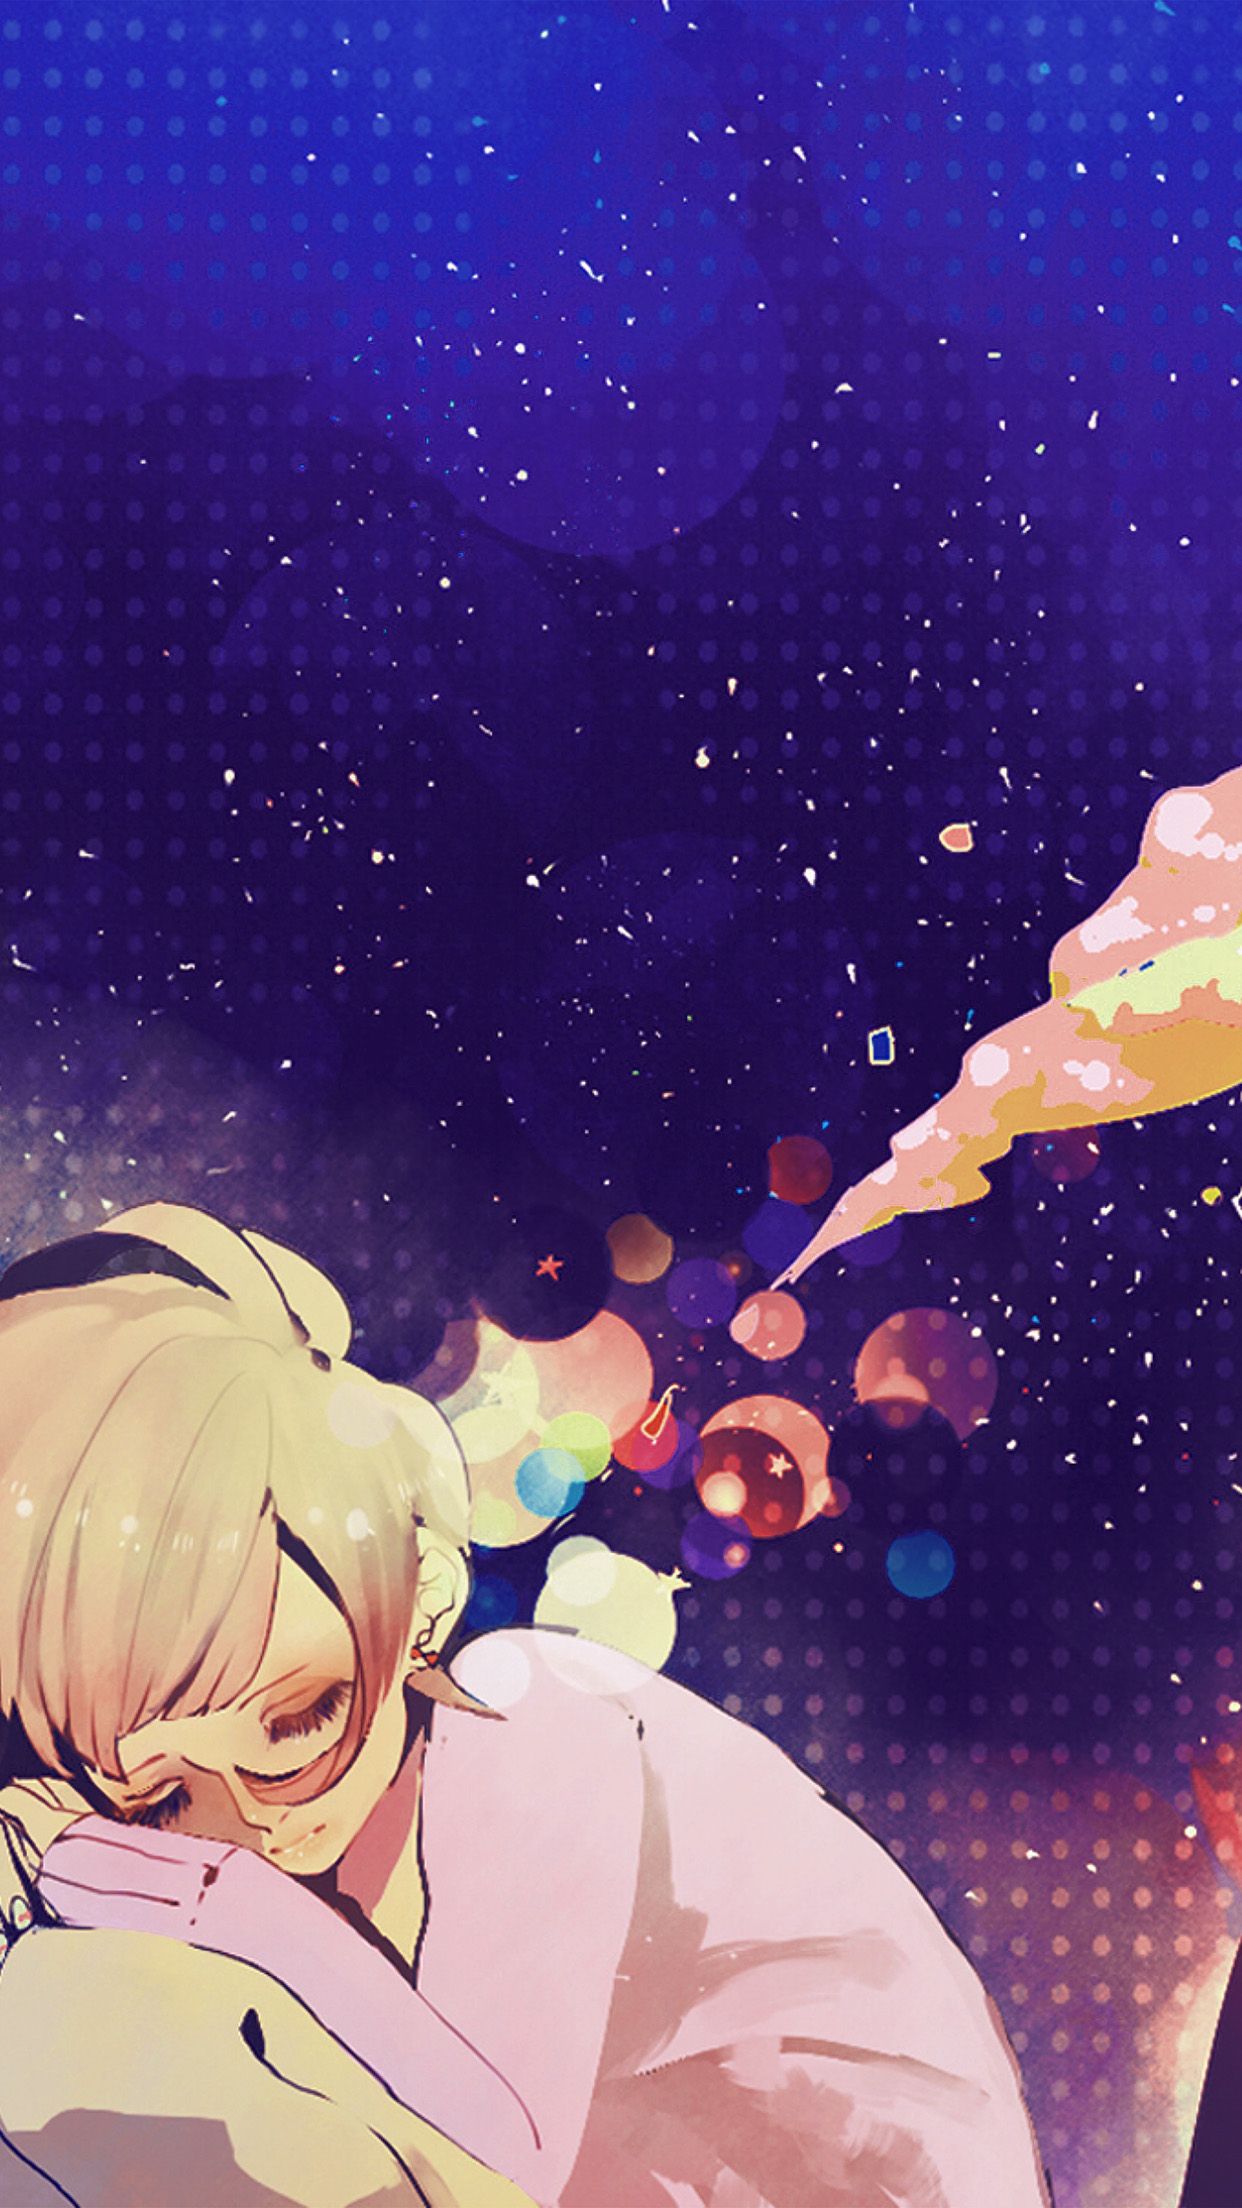 Sleeping Girl Anime Art Illustration Blue Wallpaper